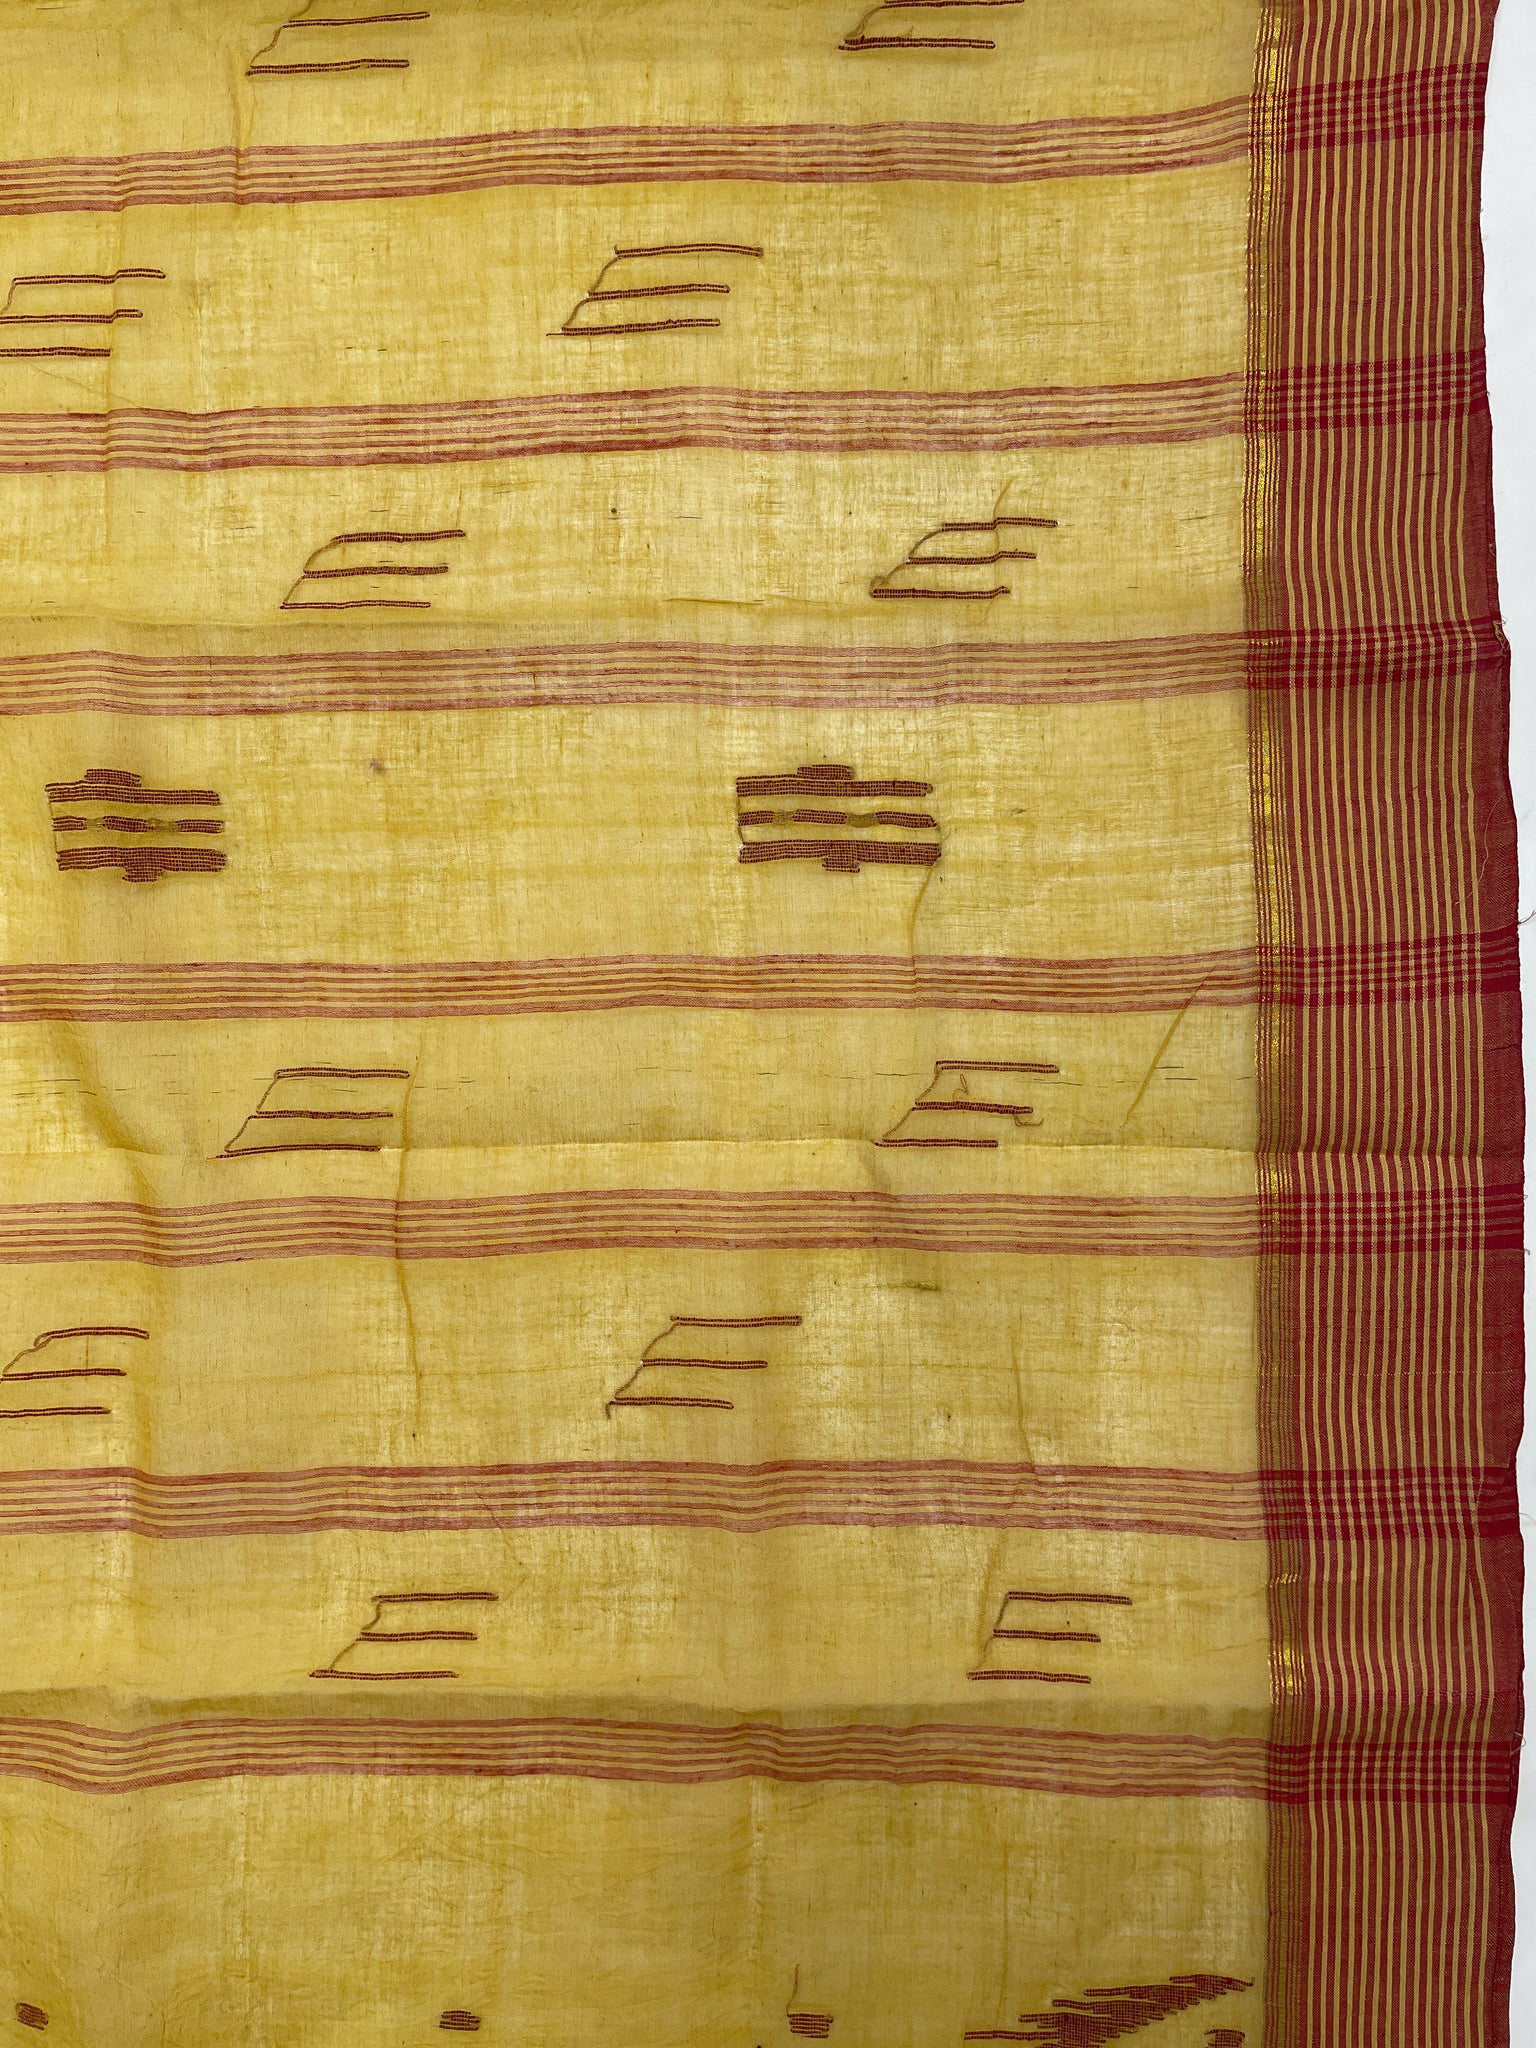 5 3/8 YD Cotton Voile Sari - Mustard Yellow with Dark Red